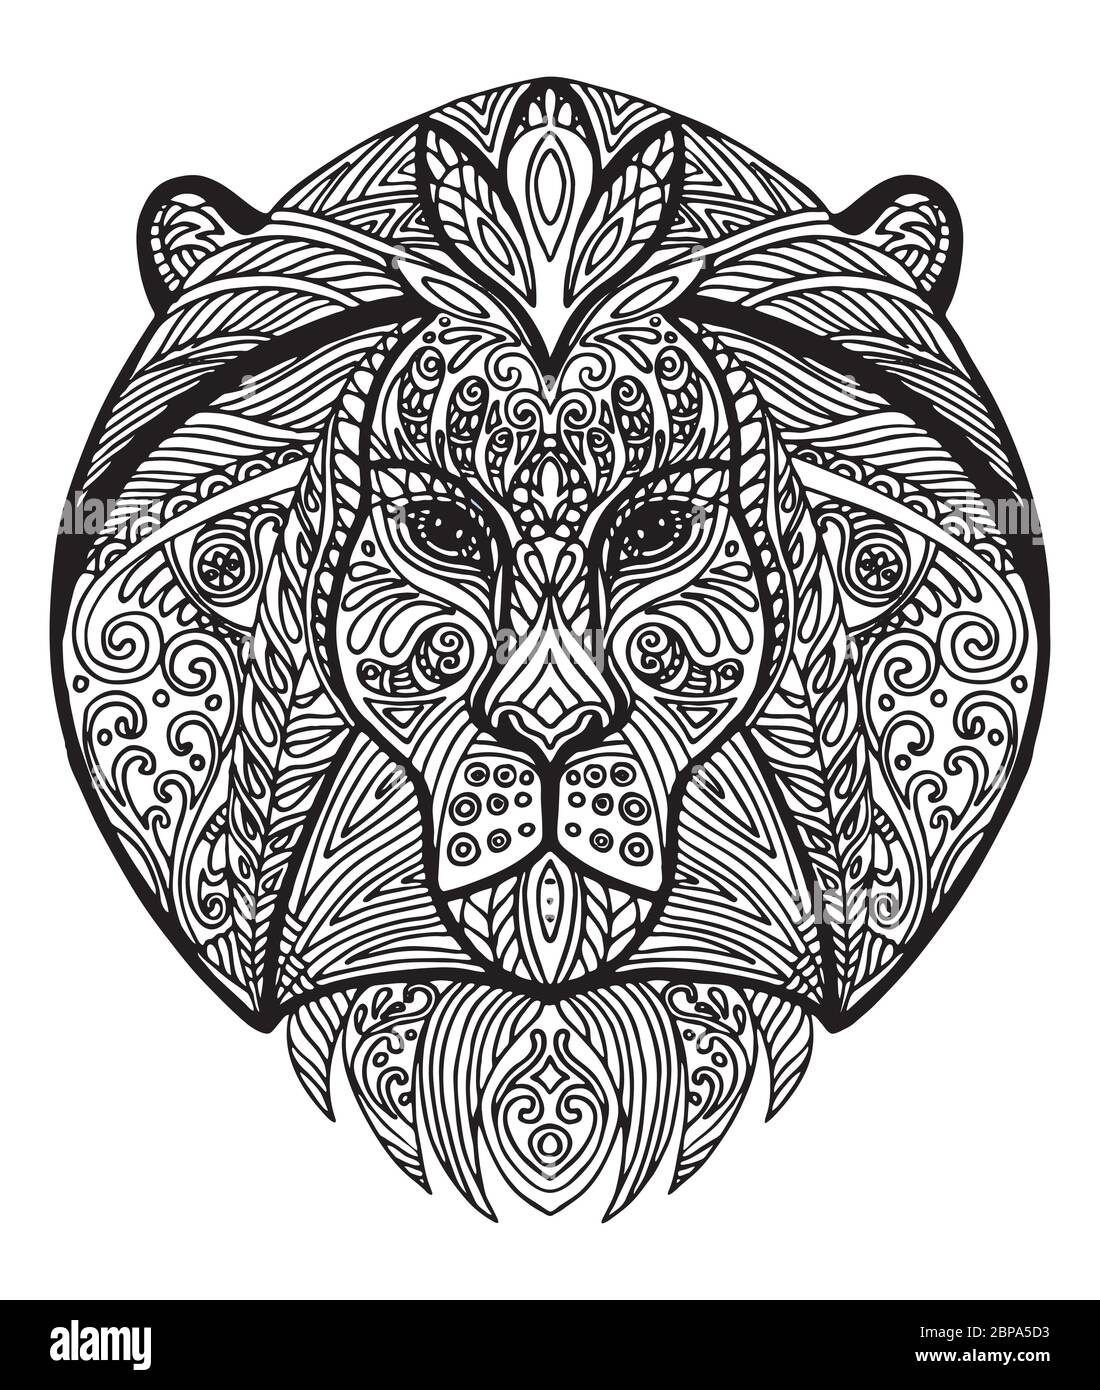 Vettore decorativo doodle testa ornamentale del leone. Illustrazione vettoriale astratta del contorno nero del leone isolato su sfondo bianco. Illustrazione del magazzino Illustrazione Vettoriale